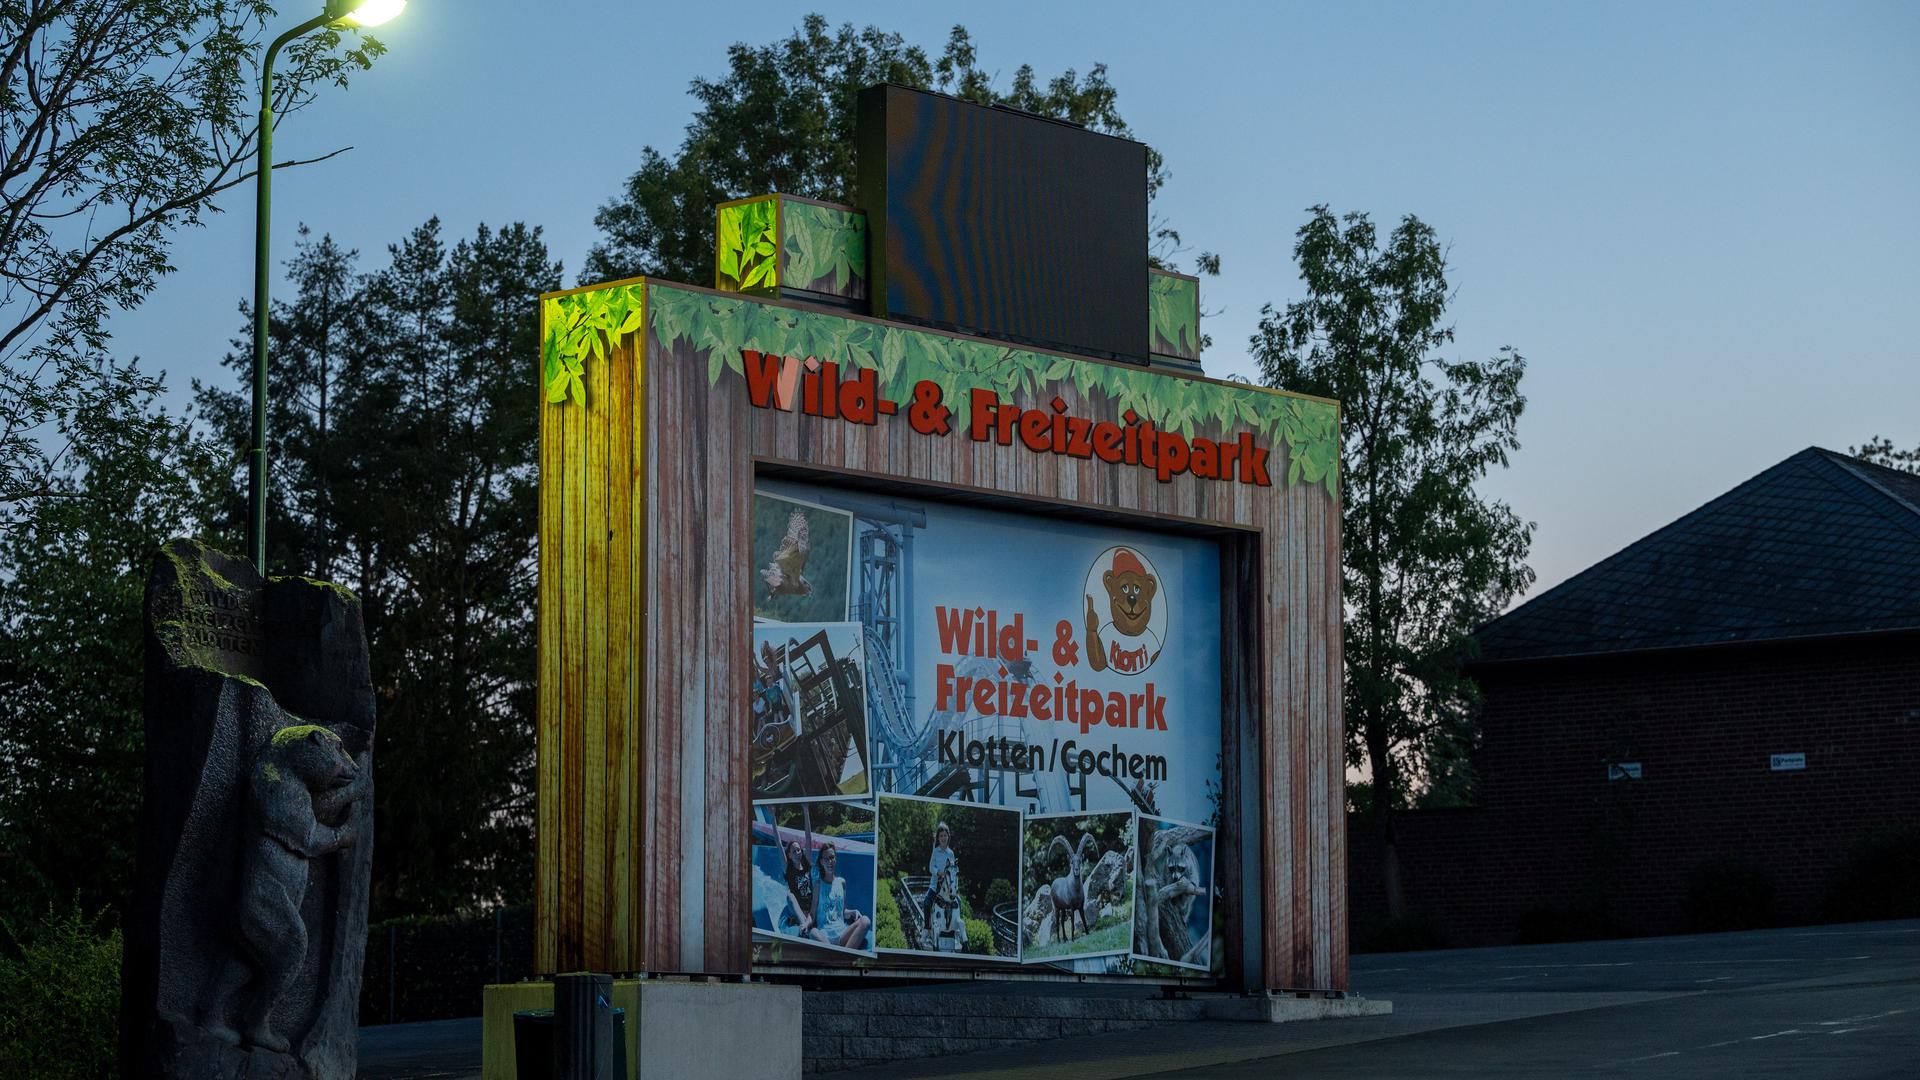 Ein Schild in der Nähe des Eingangs weist auf Ein- und Ausgang des Wild-und Freizeitparks hin. Dort ist eine Frau aus dem Saarland auf einer Achterbahn tödlich verunglückt. +++ dpa-Bildfunk +++